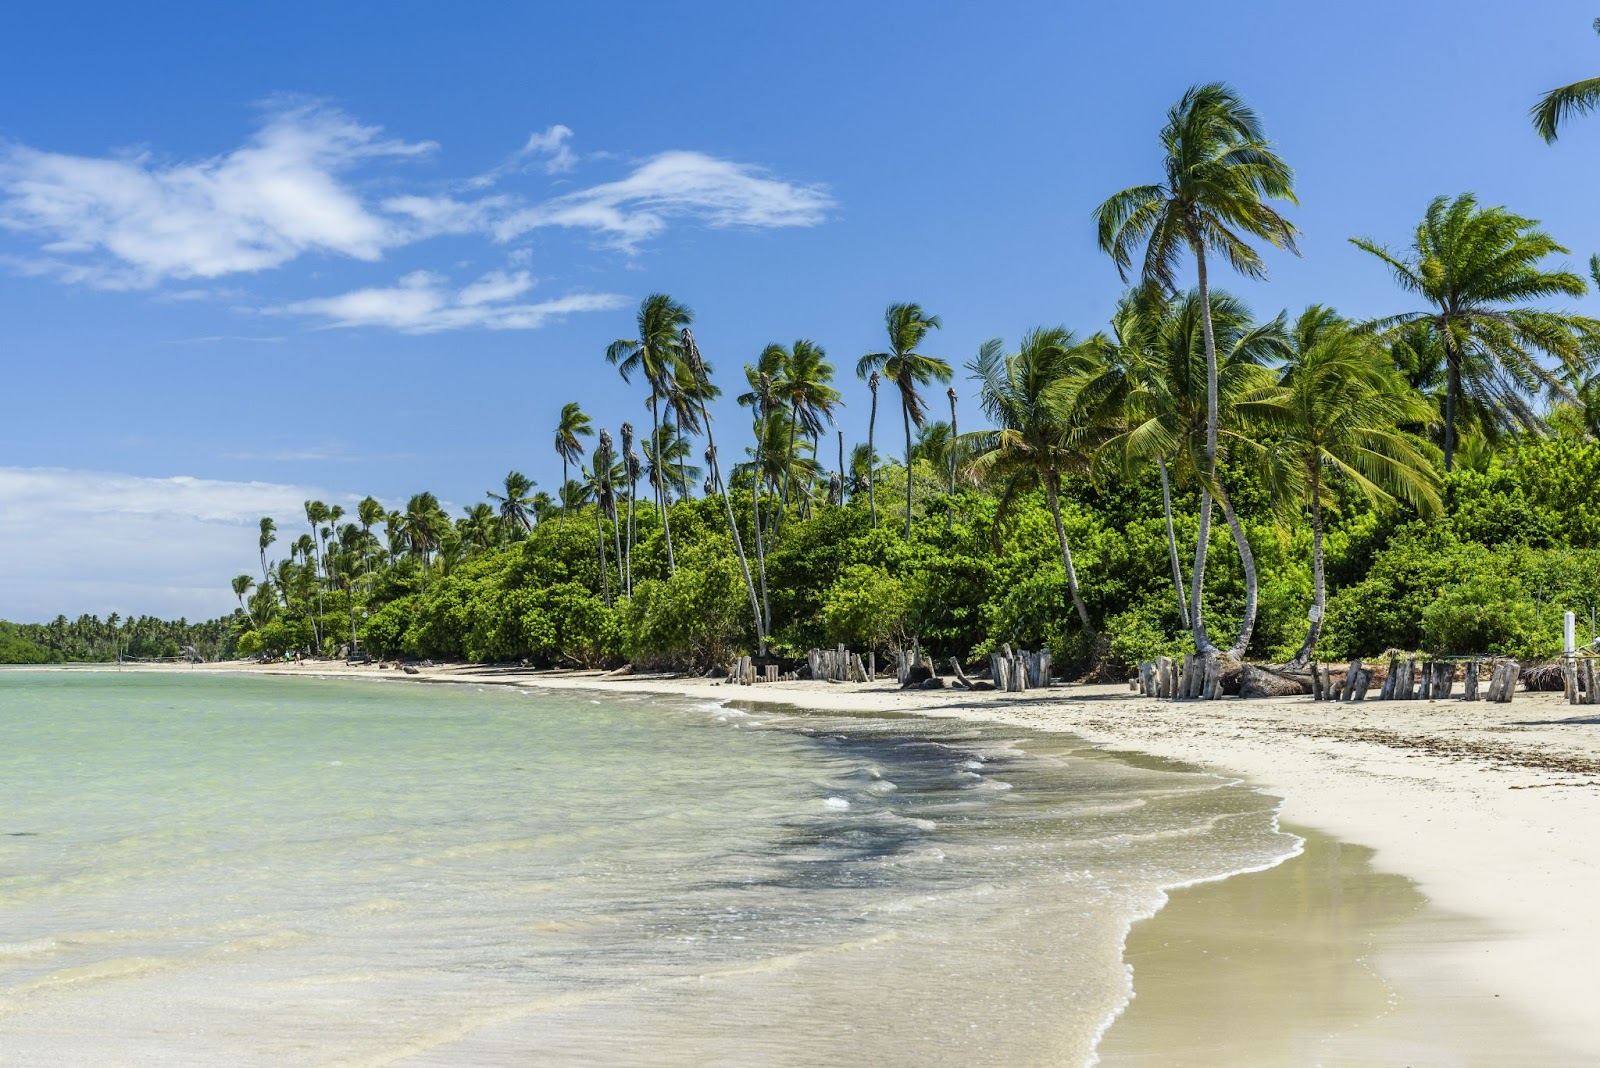 Praia do Encanto vista de lado, com o mar cristalino em tom verde claro ao lado esquerdo chegando na faixa de areia, em frente à diversas palmeiras e vegetação regional.